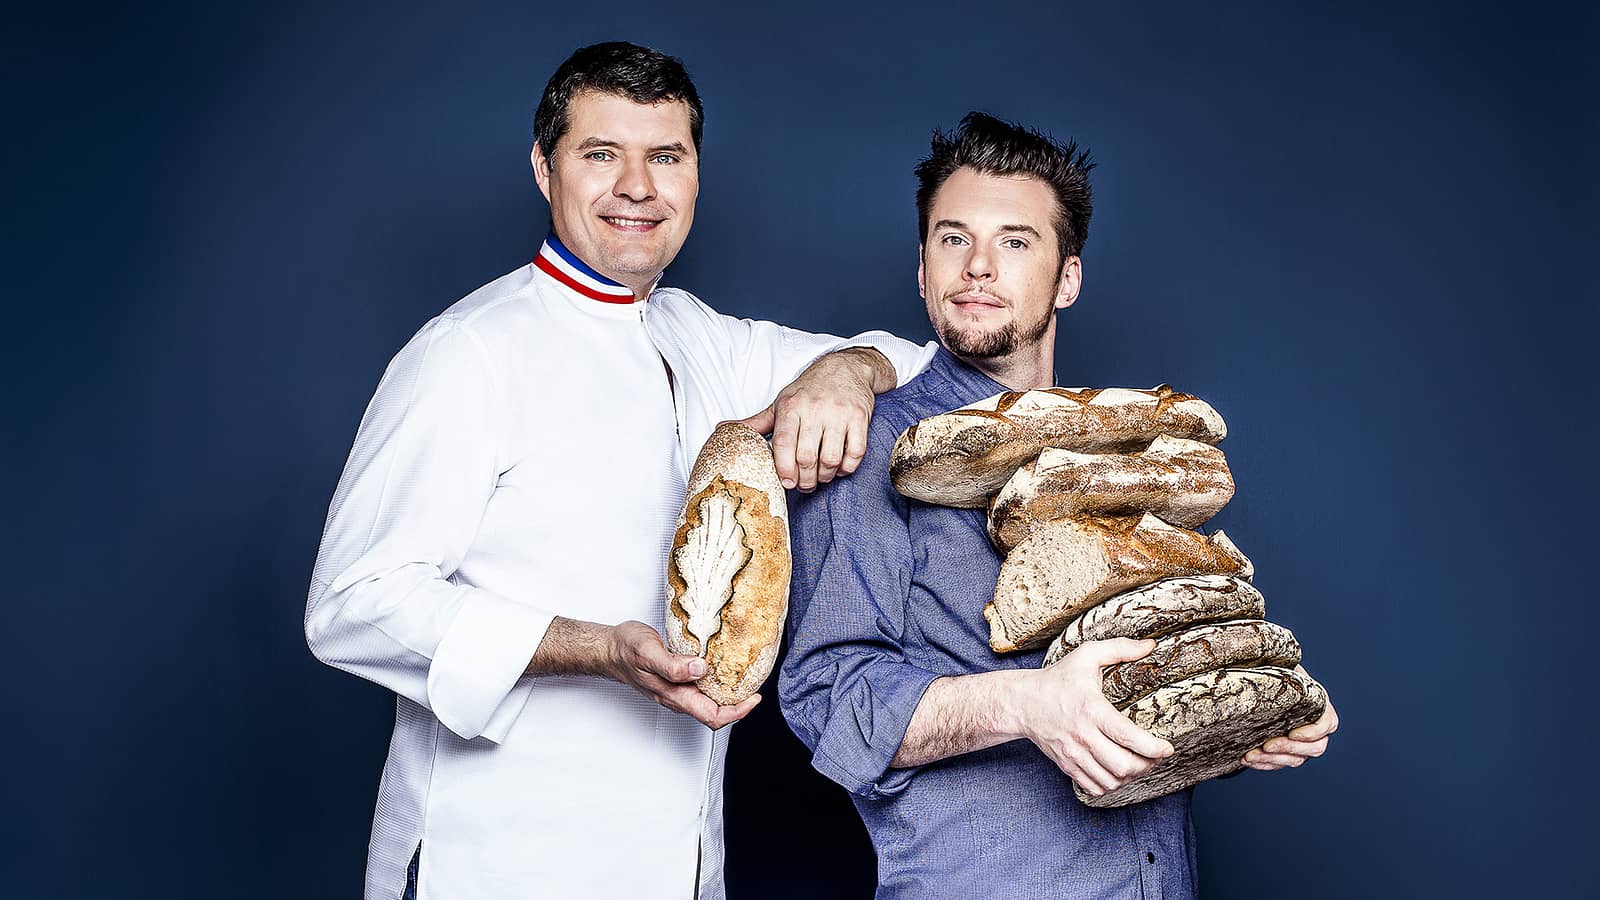 "La meilleure boulangerie de France" le 19 août sur M6